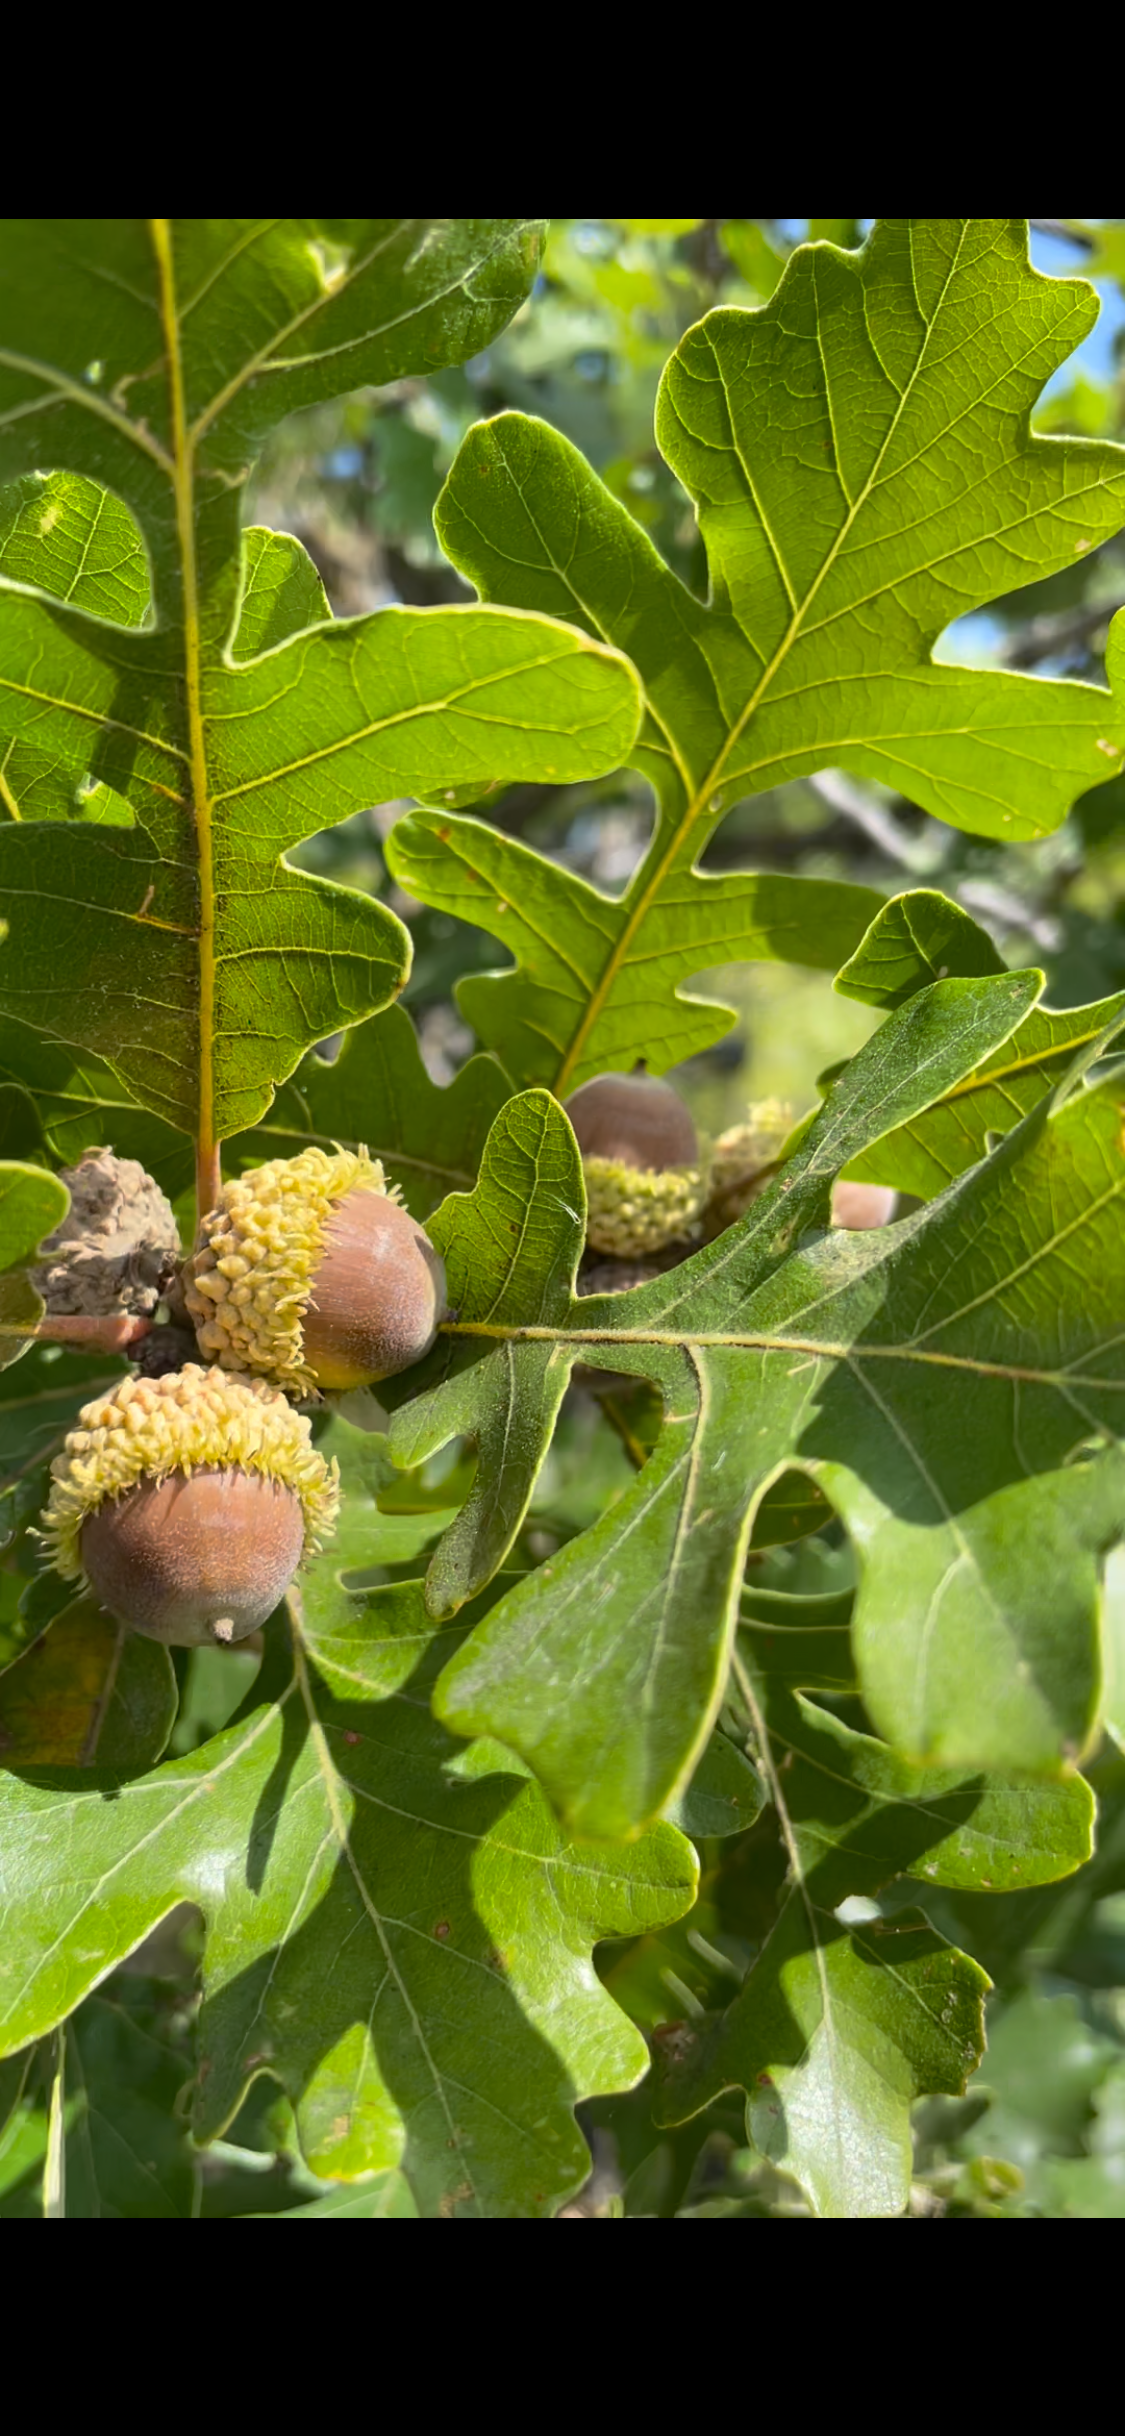 Bur Oak (Quercus macrocarpa)